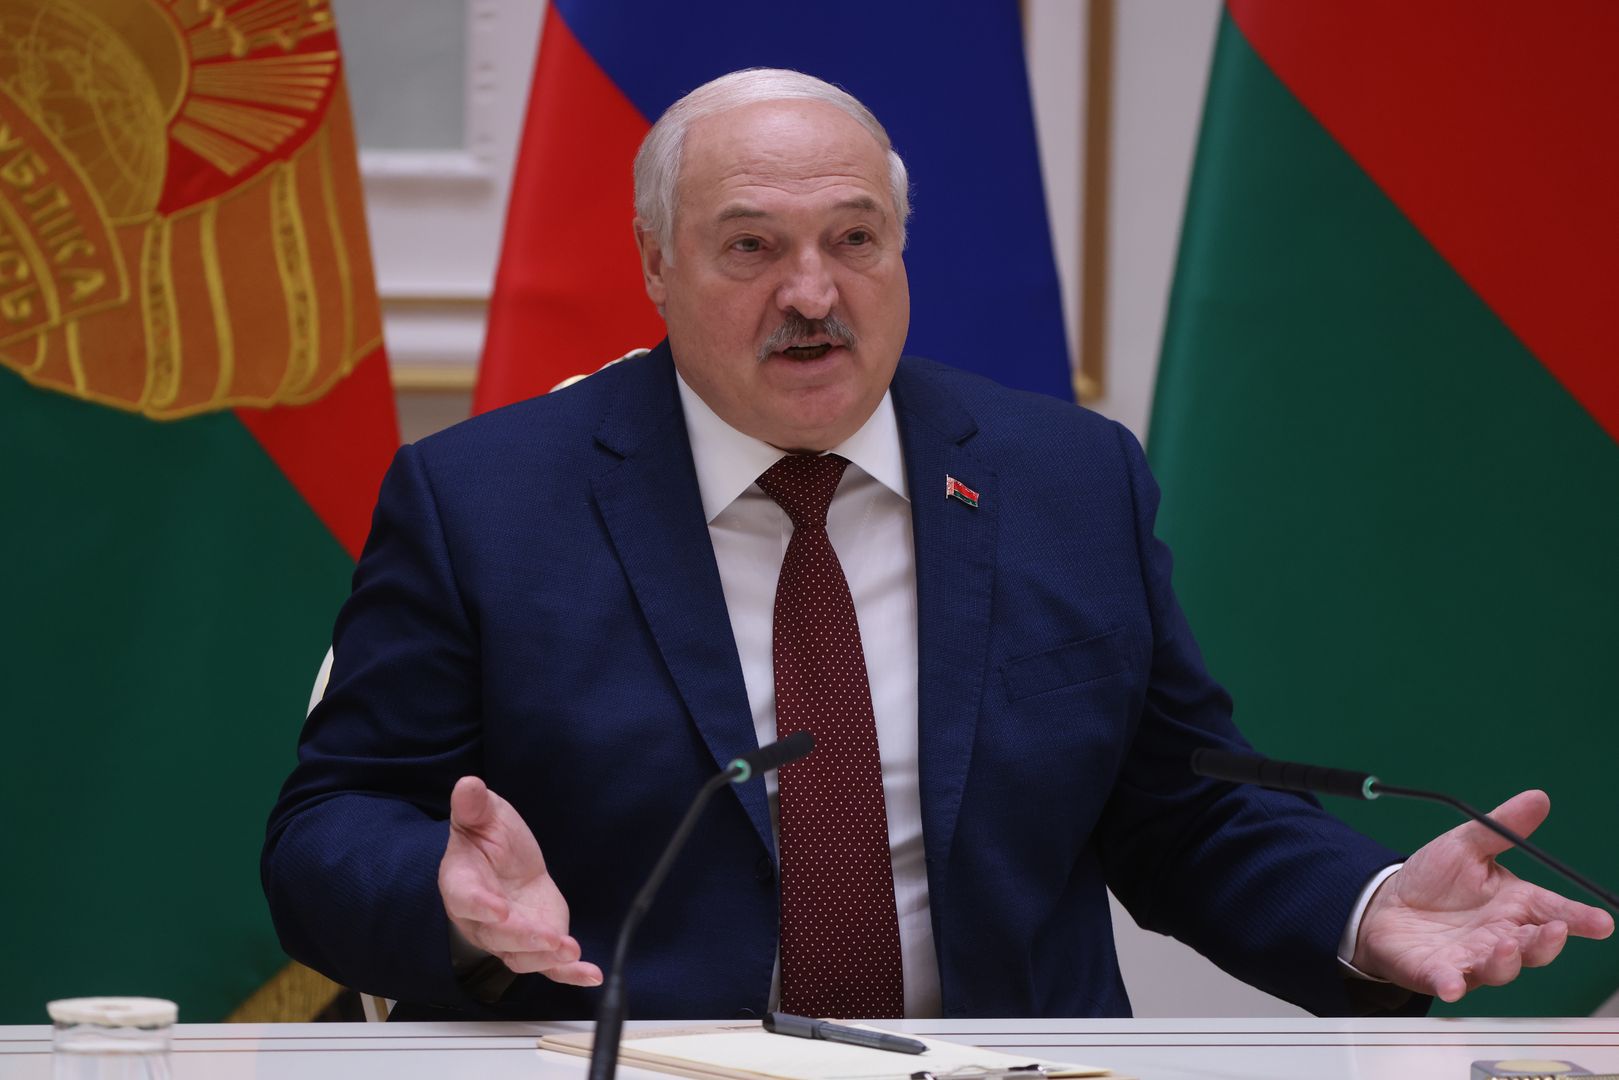 "Zostały ustawione na pozycjach". Łukaszenka próbuje straszyć Ukrainę